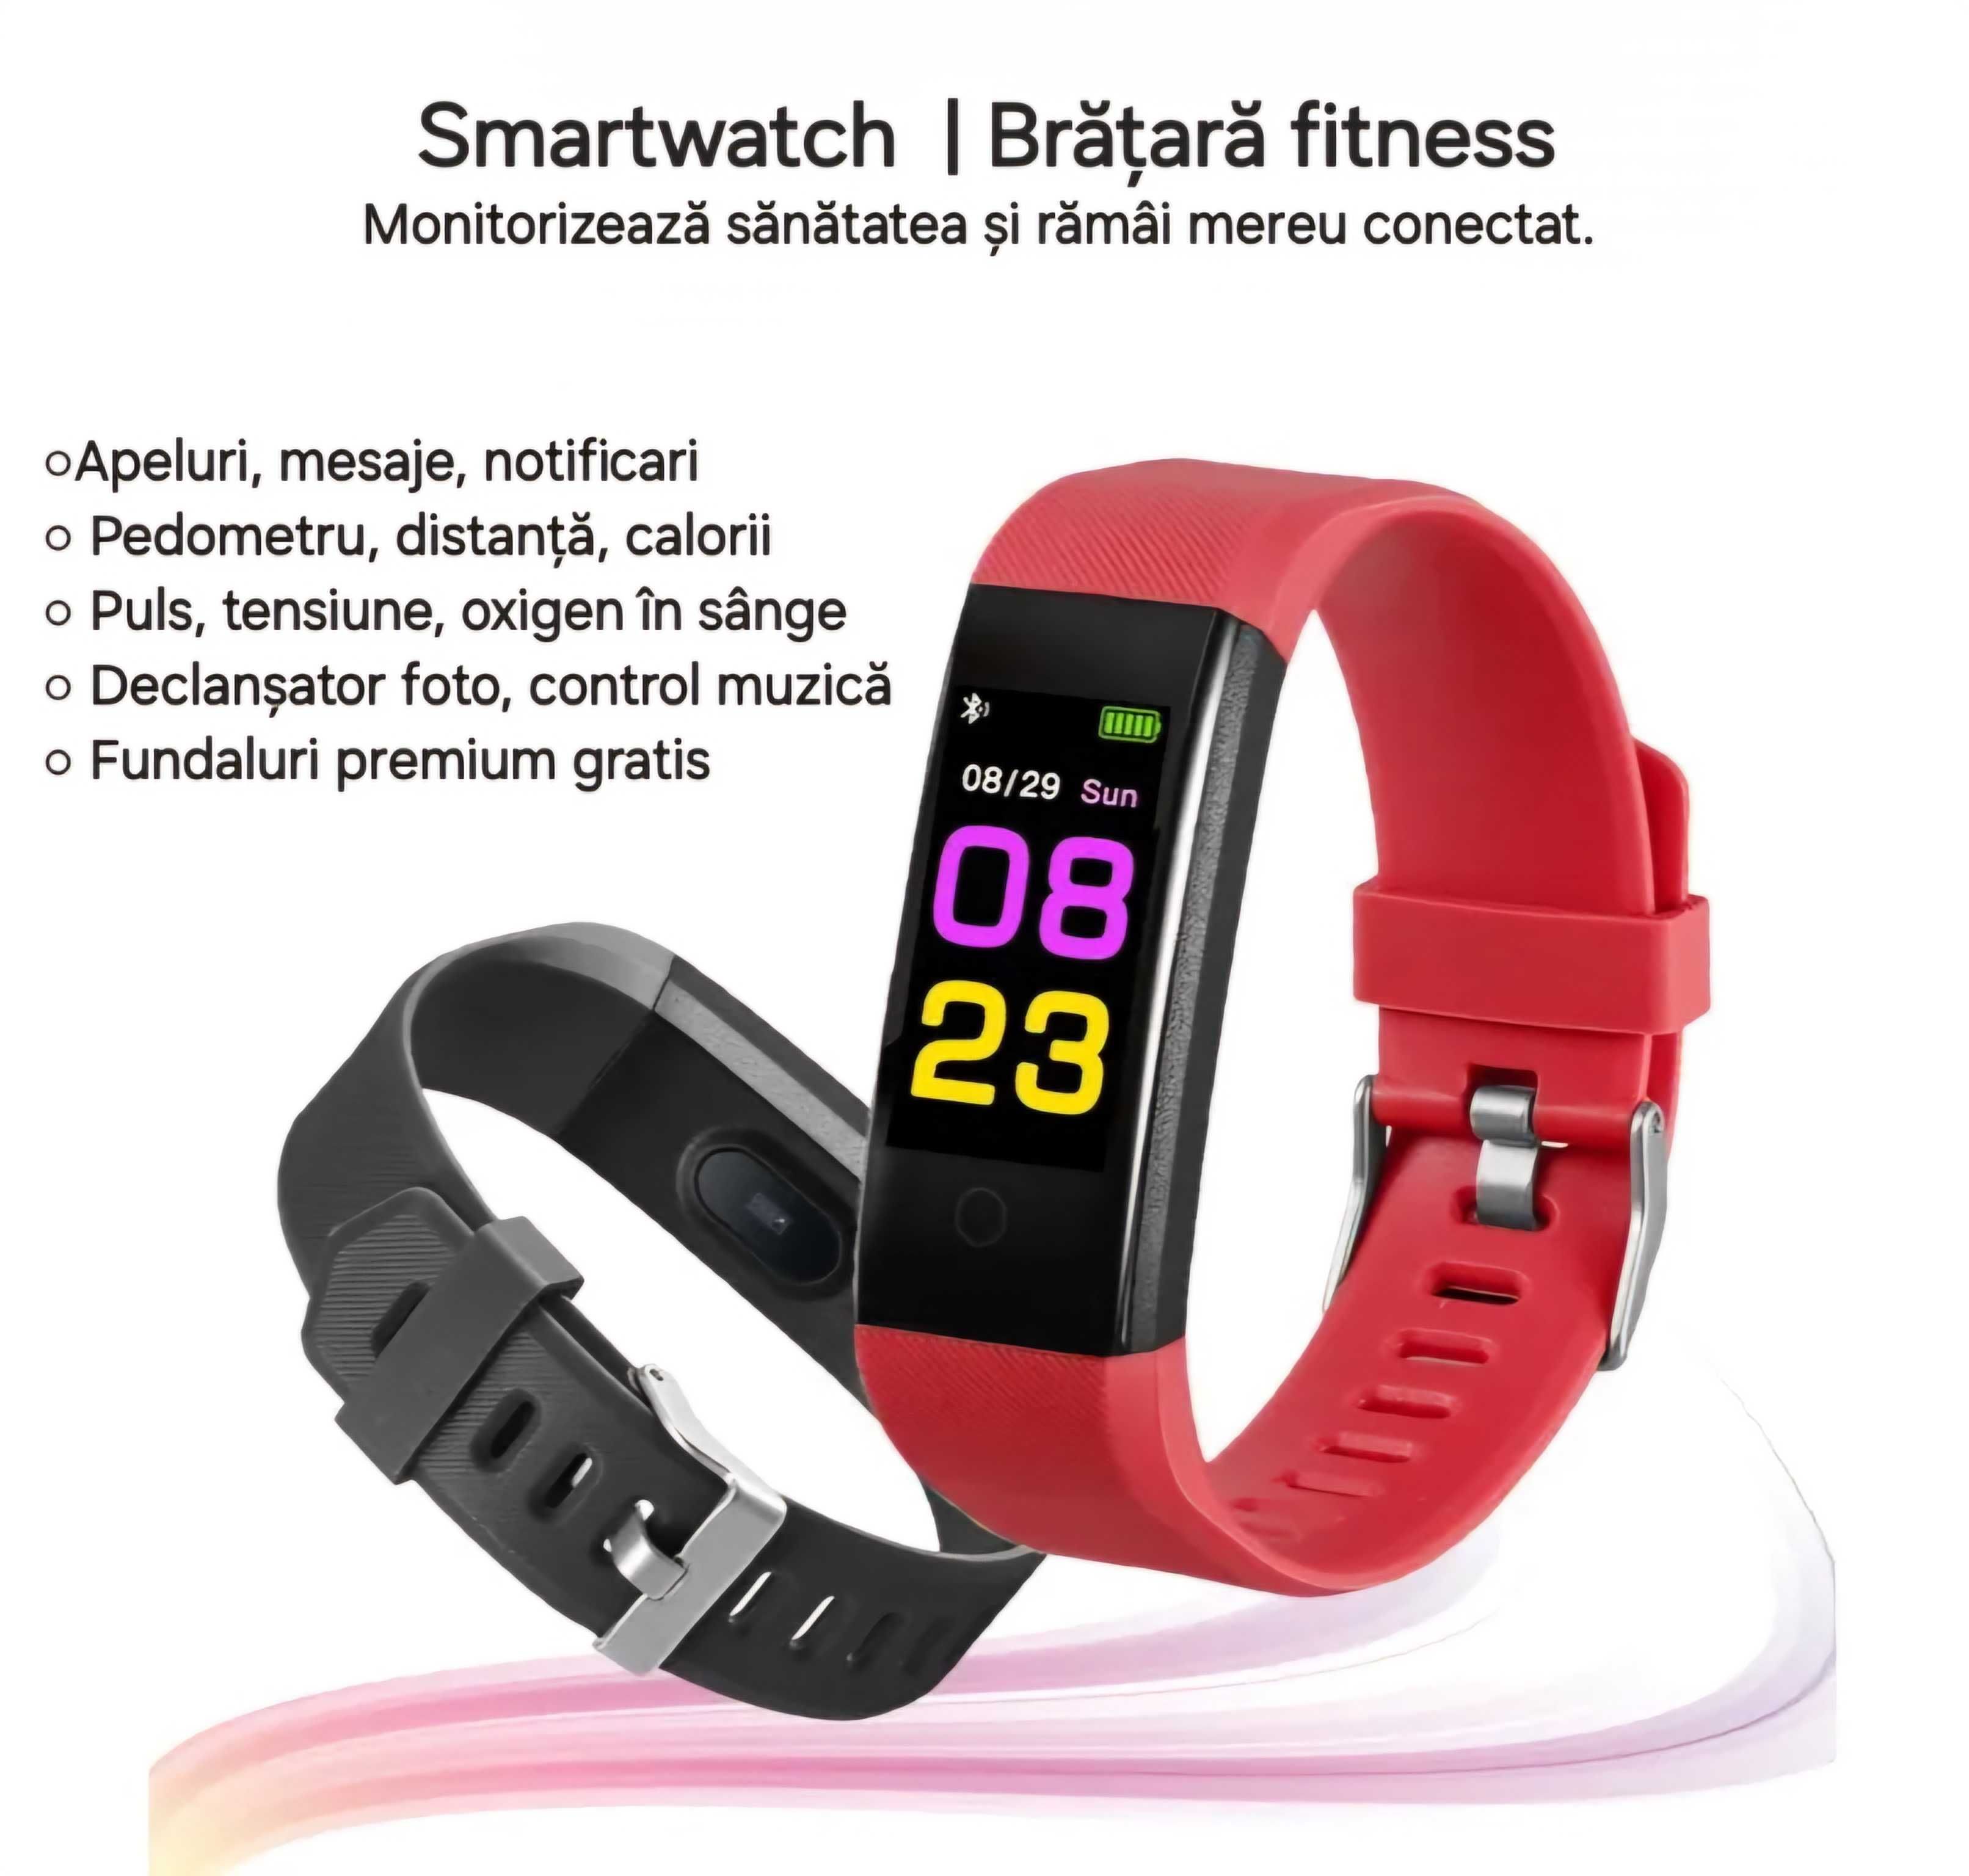 Smartwatch futurist. Multi-funcții: apel/mesaje/fitness/sănătate.Negru